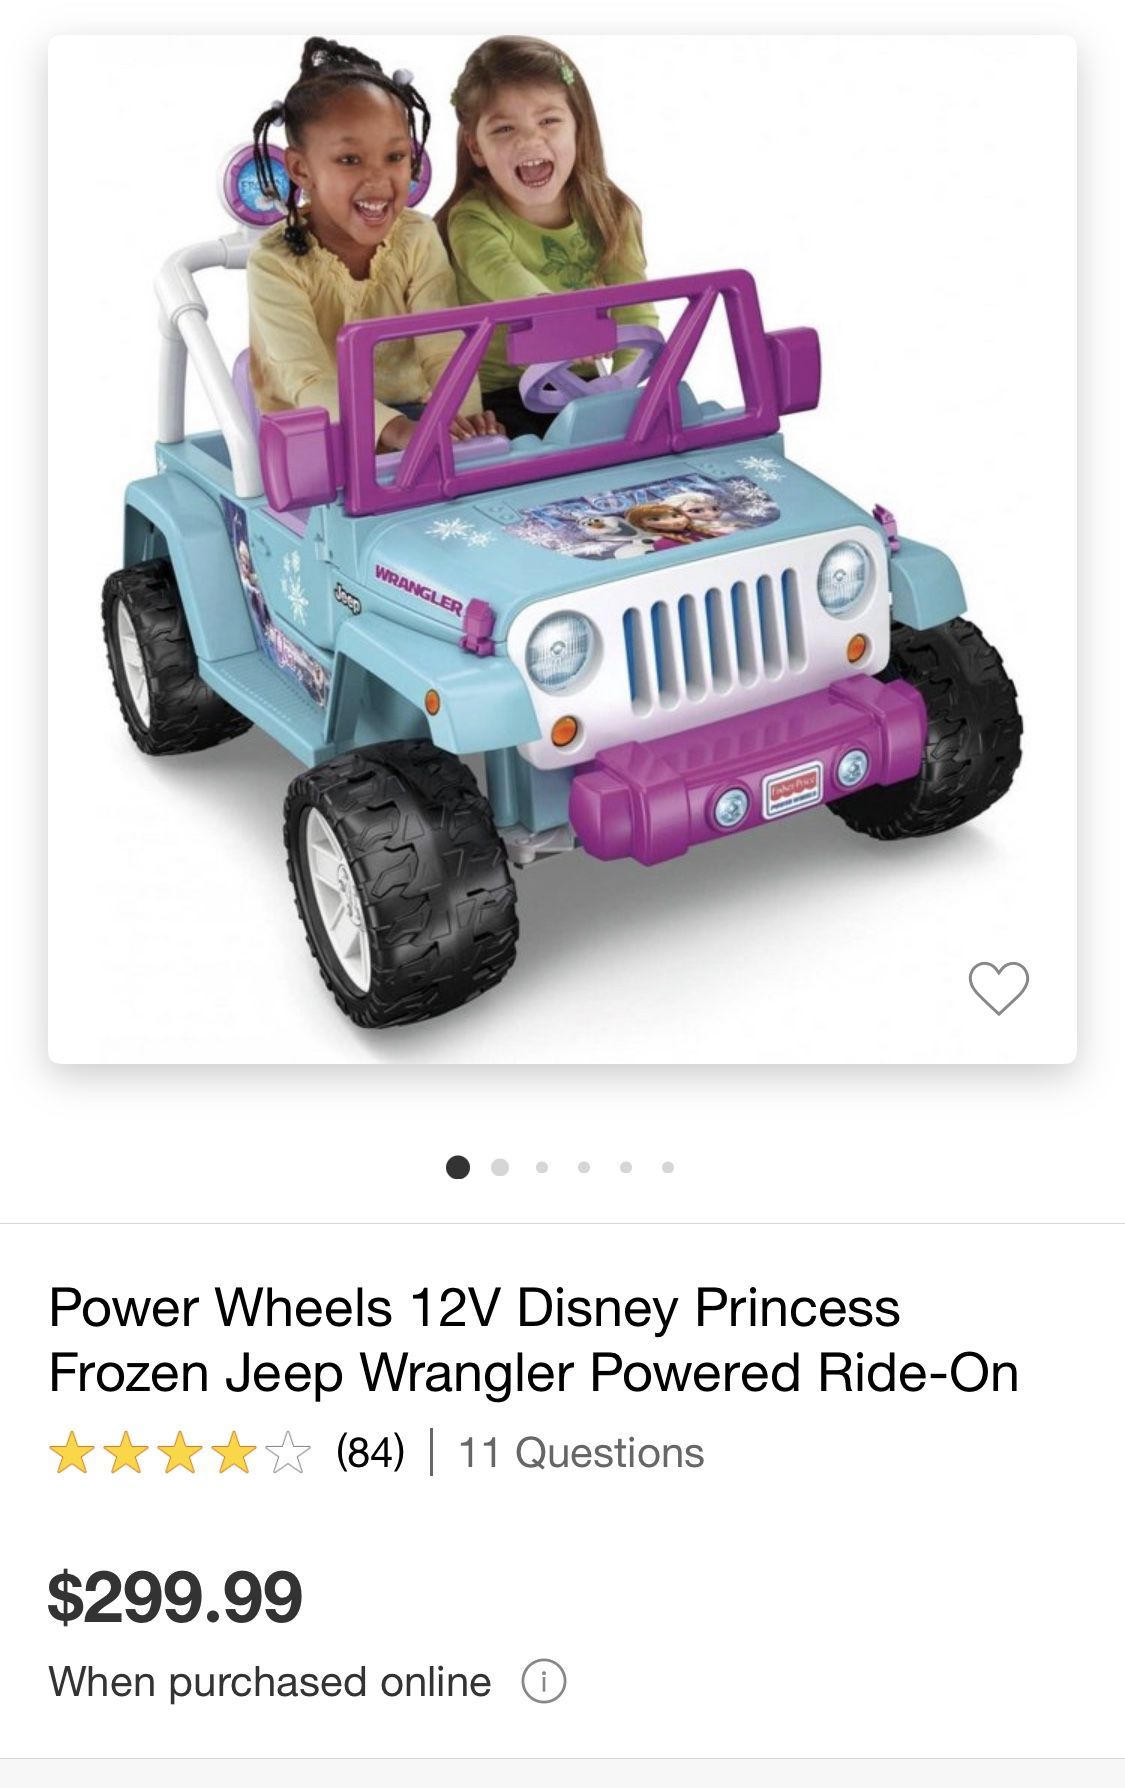  Power Wheels Disney Frozen Jeep Wrangler Ride-On